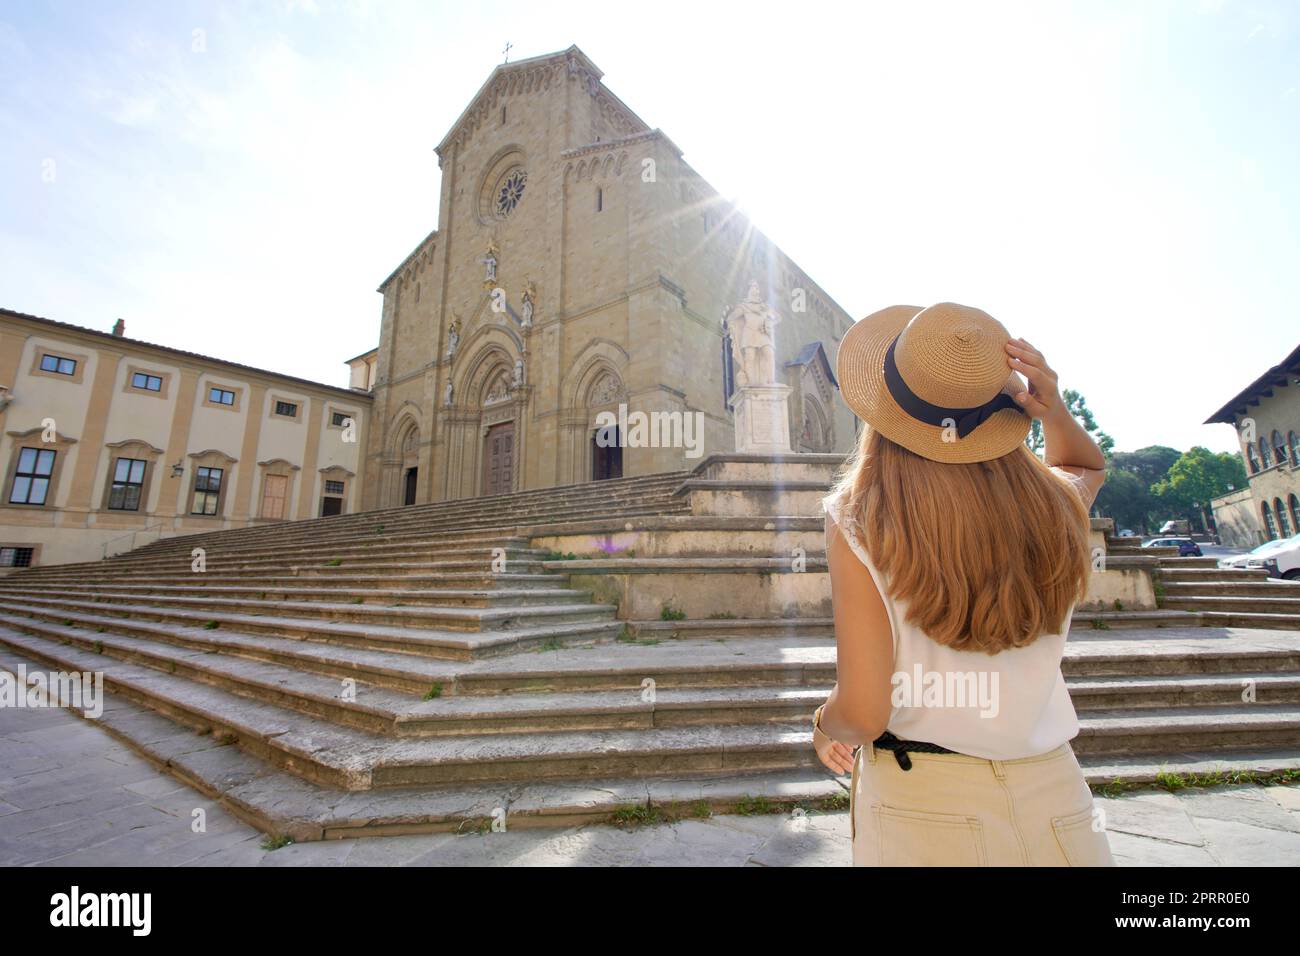 Tourismus in der Toskana. Rückansicht einer jungen Frau auf dem Piazza Duomo Platz in der Altstadt von Arezzo, Toskana, Italien. Stockfoto